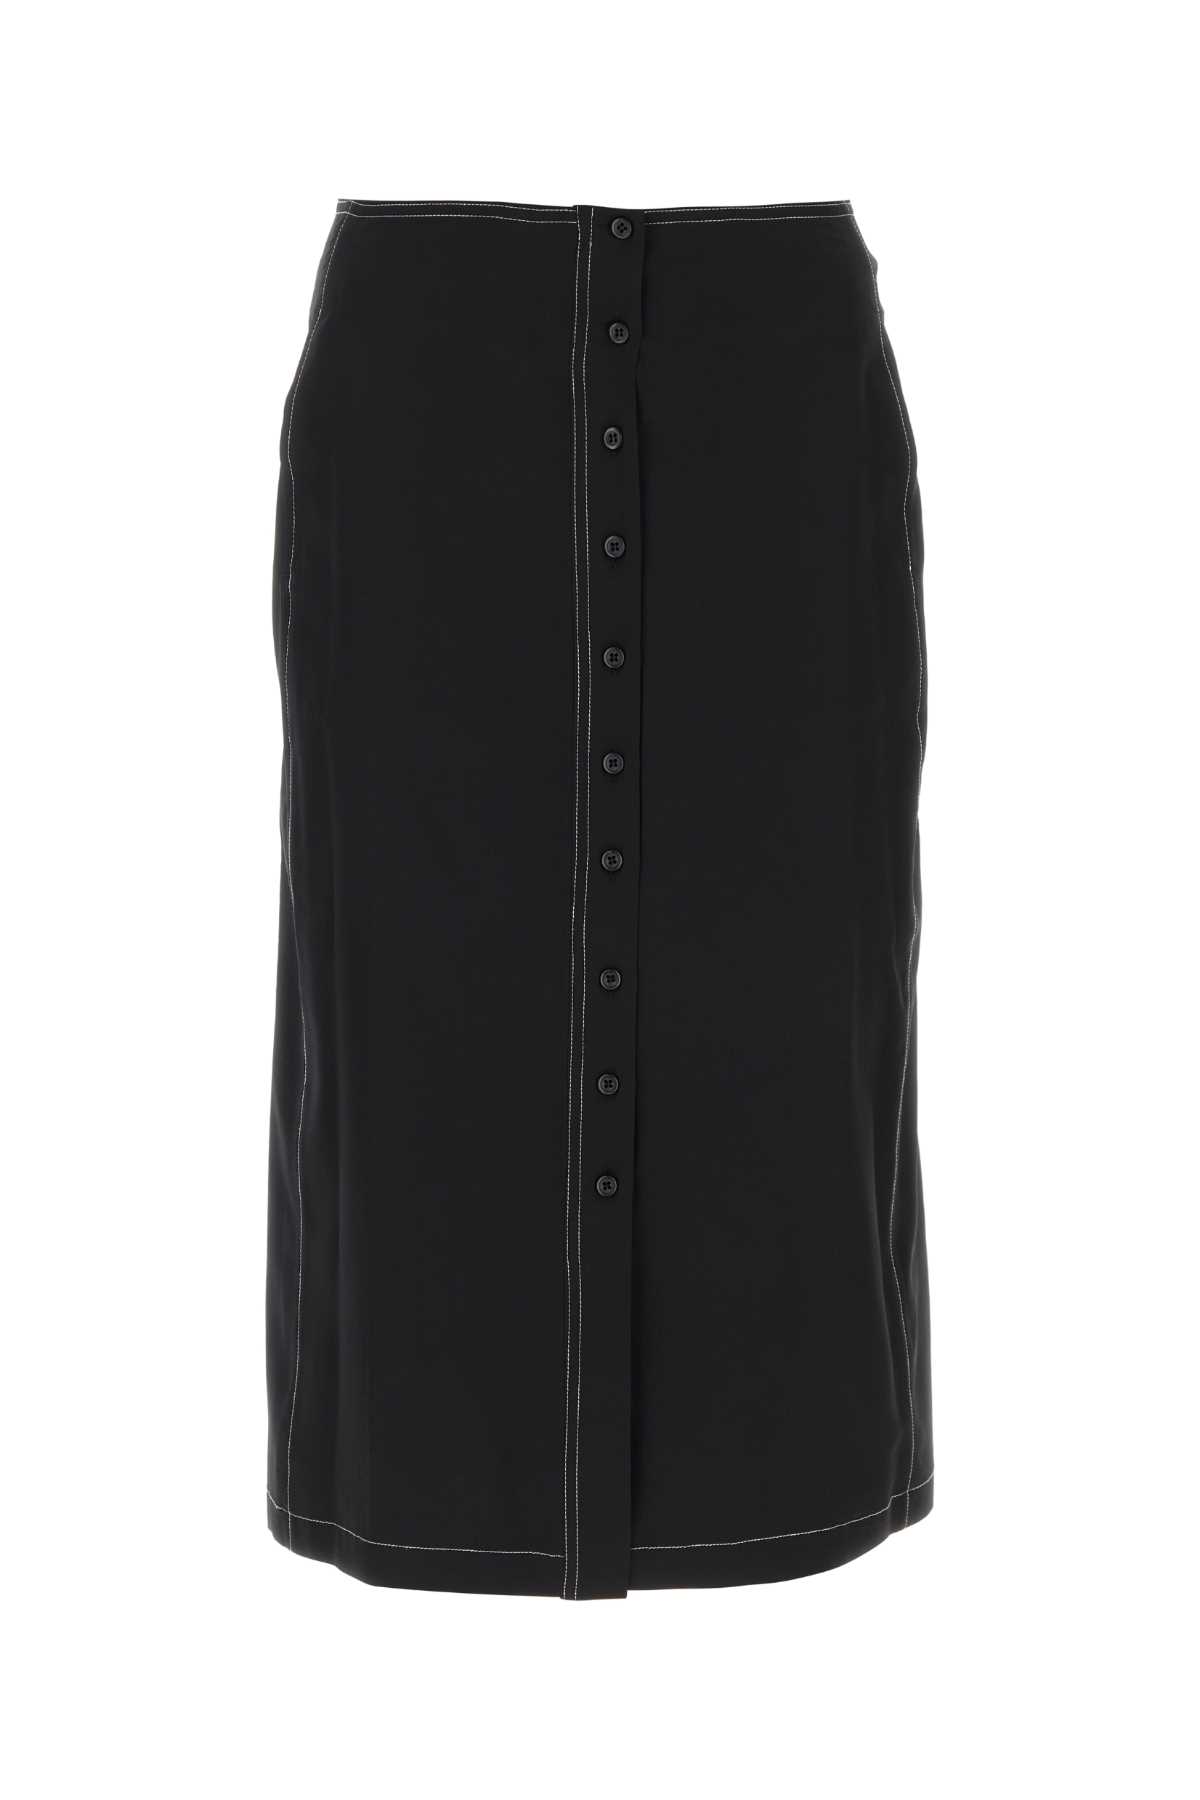 Black Crepe Skirt